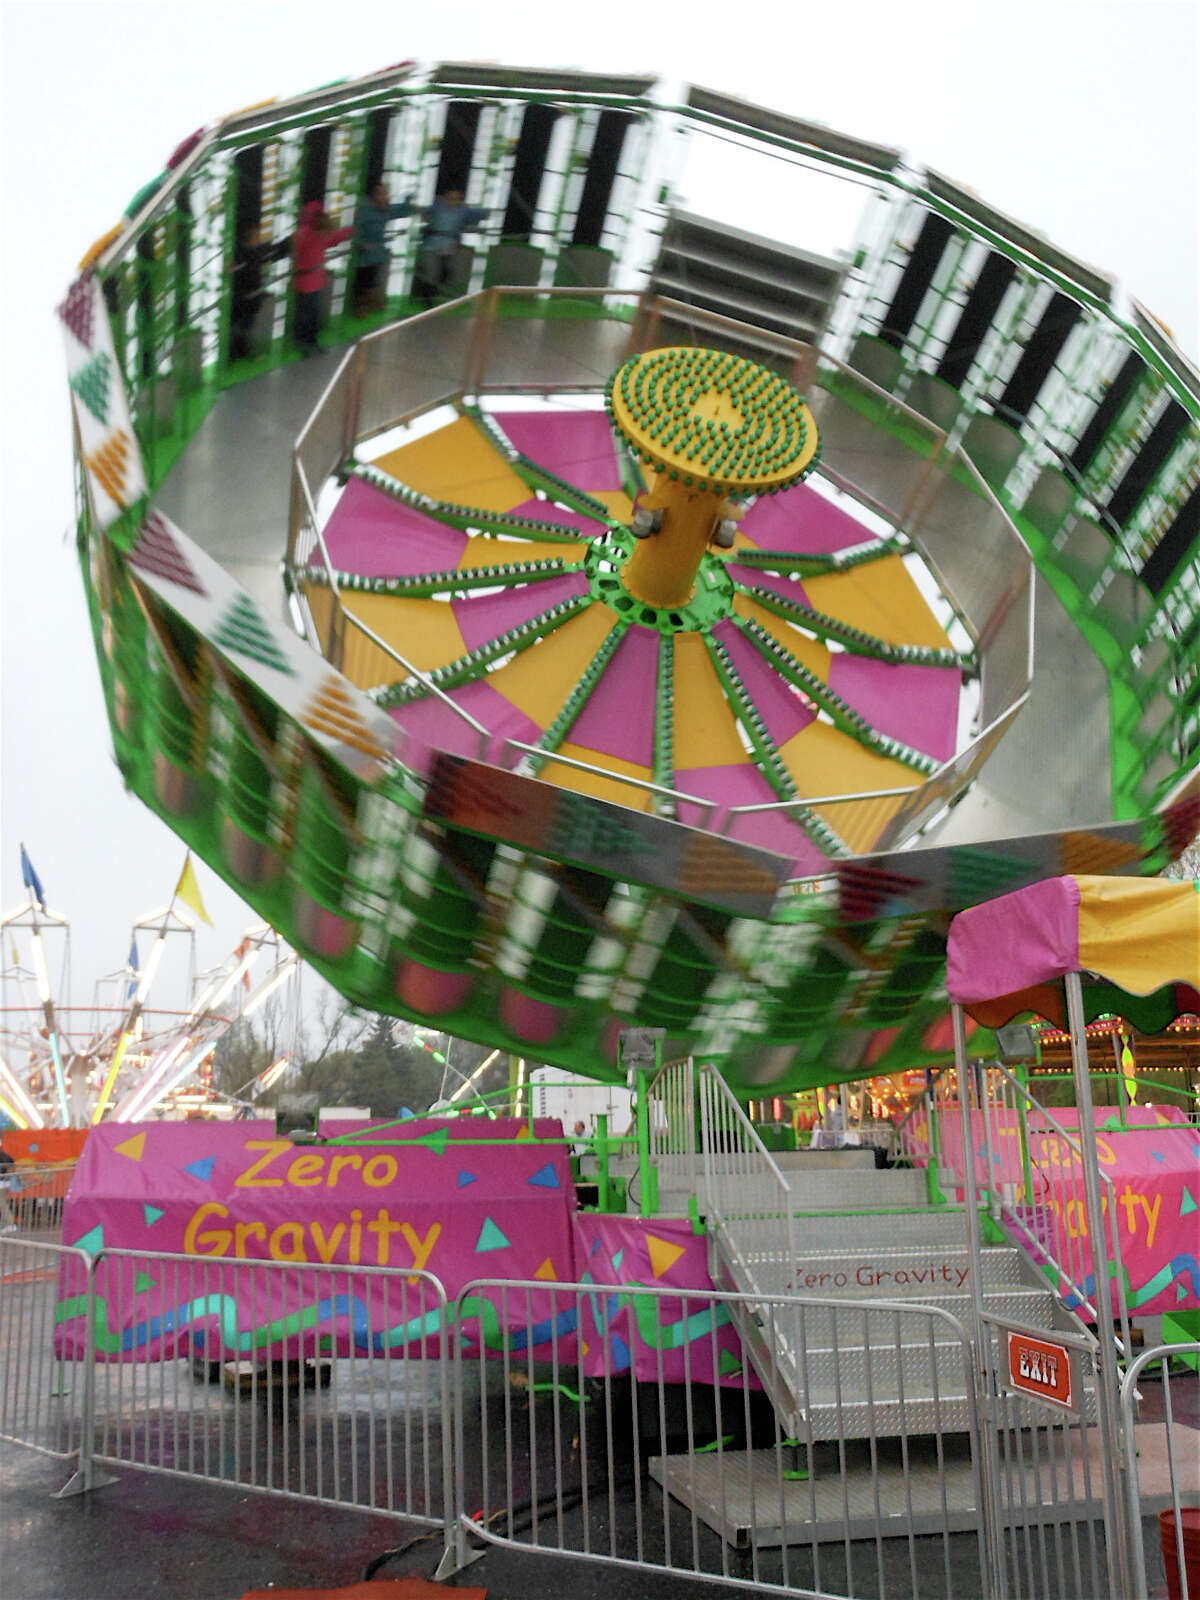 McKinley carnival awash in fun despite damp opening